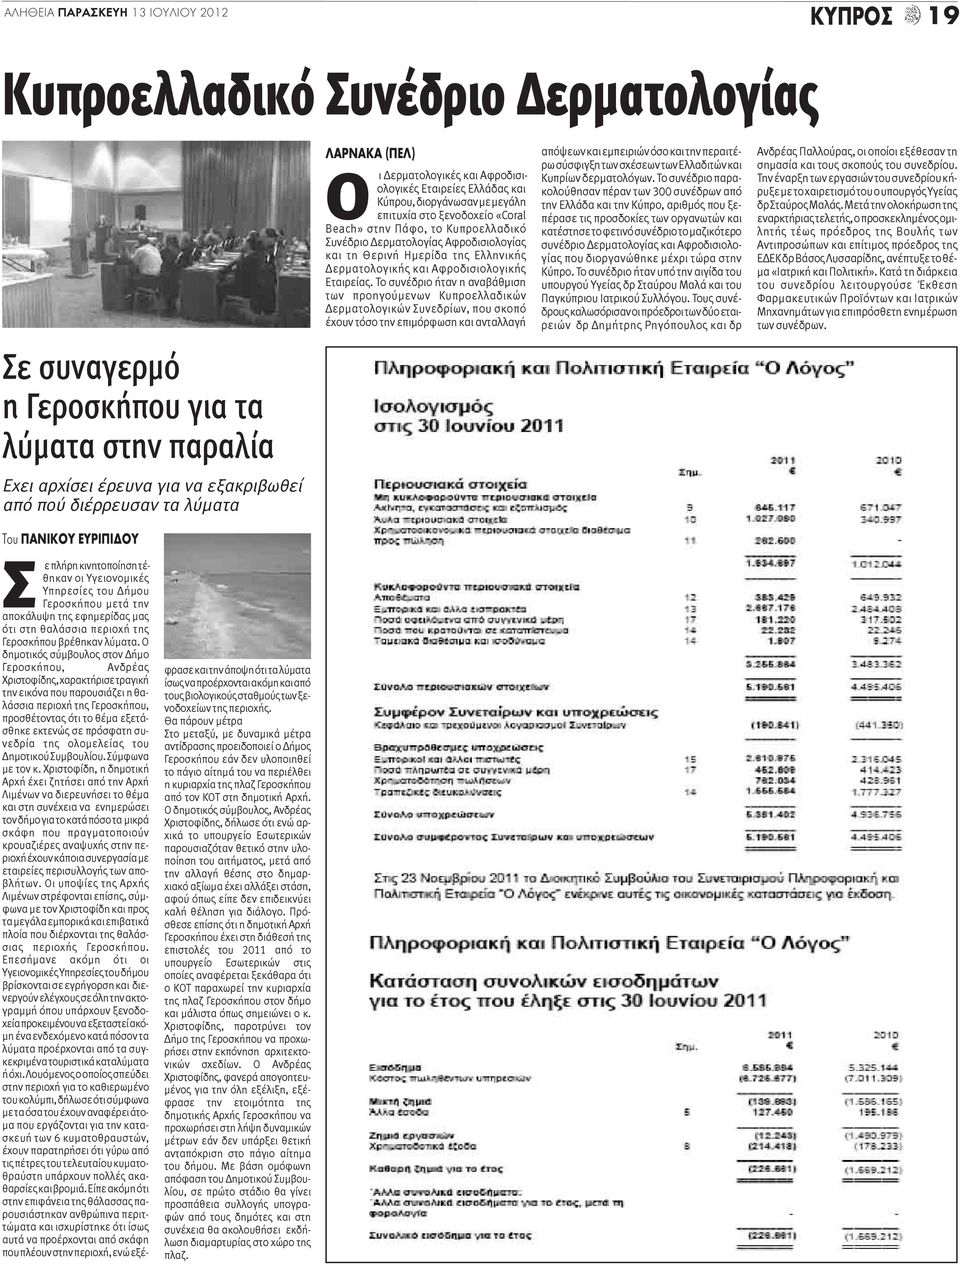 Θερινή Ημερίδα της Ελληνικής Δερματολογικής και Αφροδισιολογικής Εταιρείας.